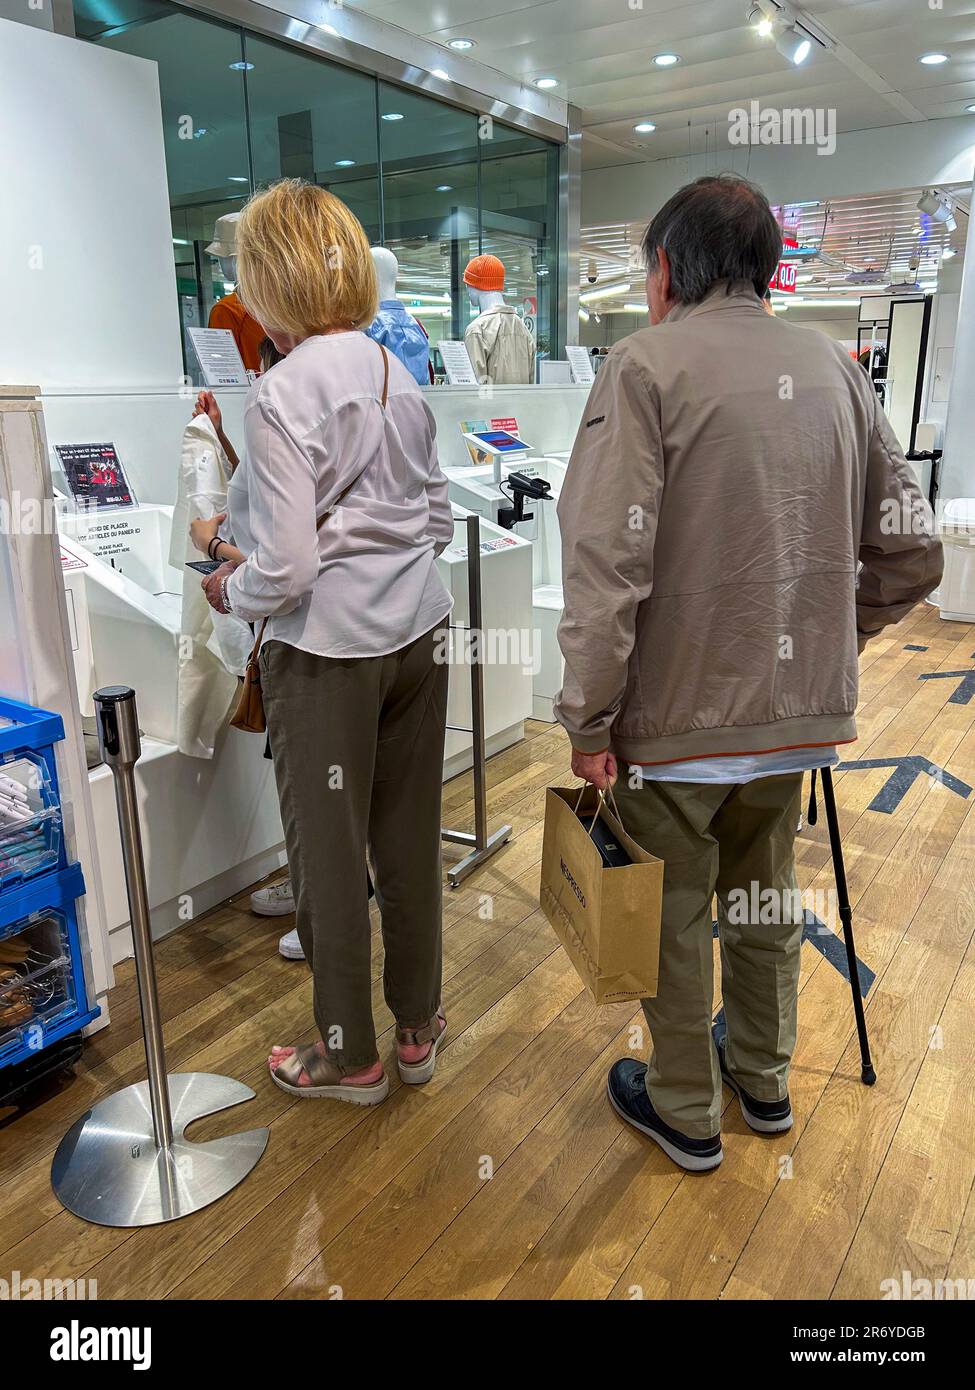 Paris, France, clients seniors utilisant des machines à auto-vérification dans le magasin de vêtements Uni-Qlo, grand magasin Printemps, 12th District Banque D'Images